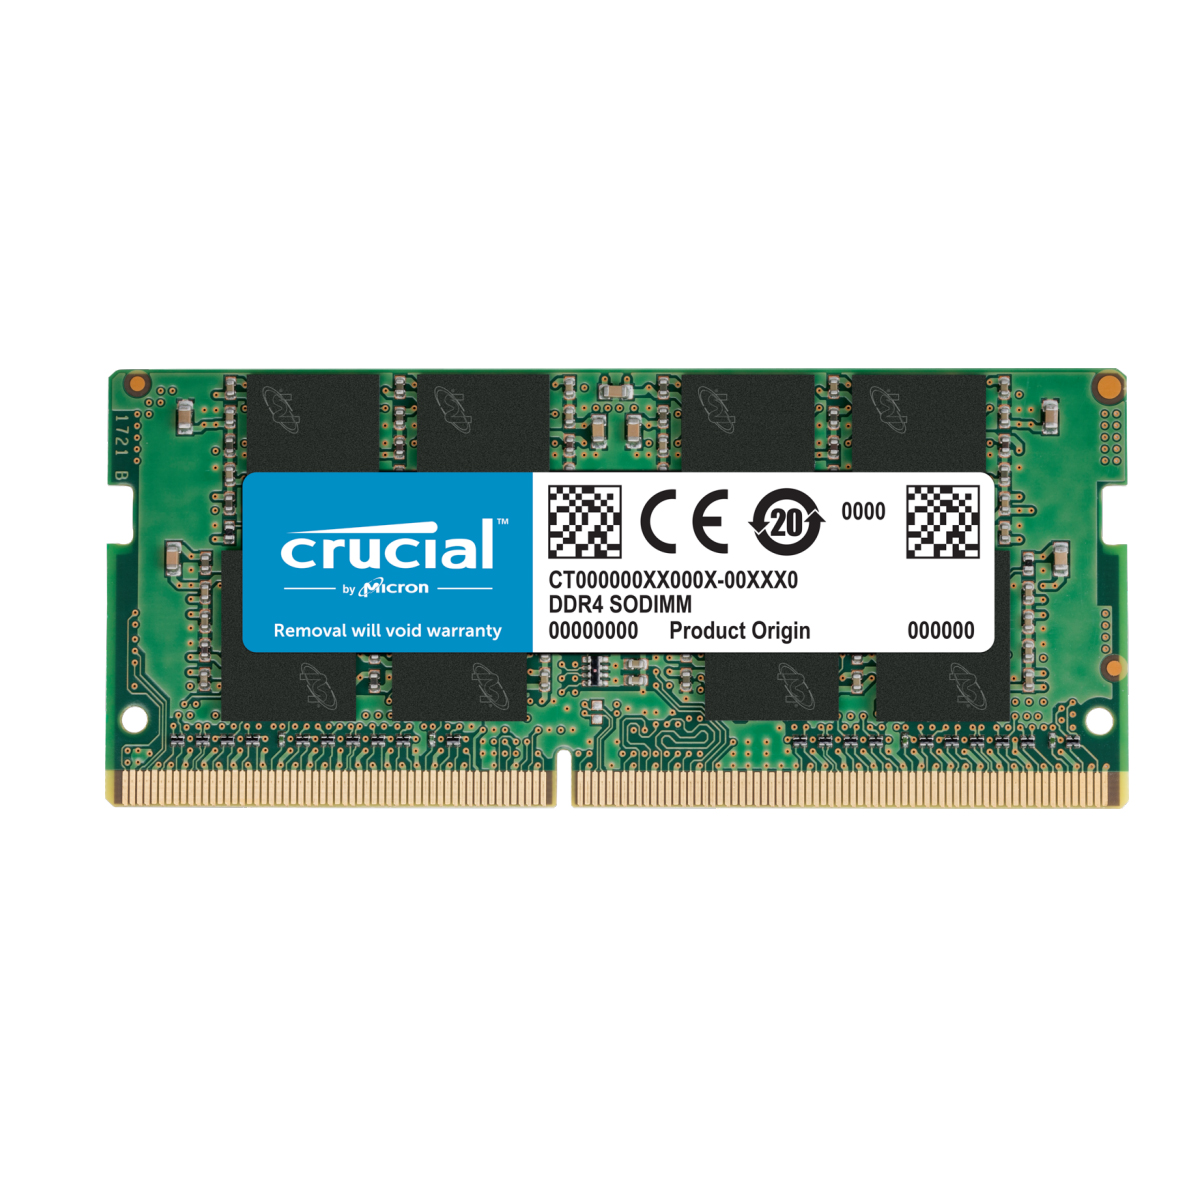 نقد و بررسی رم لپ تاپ DDR4 تک کاناله 2666 مگاهرتز CL19 کروشیال مدل CT000000XX000X ظرفیت 8 گیگابایت توسط خریداران